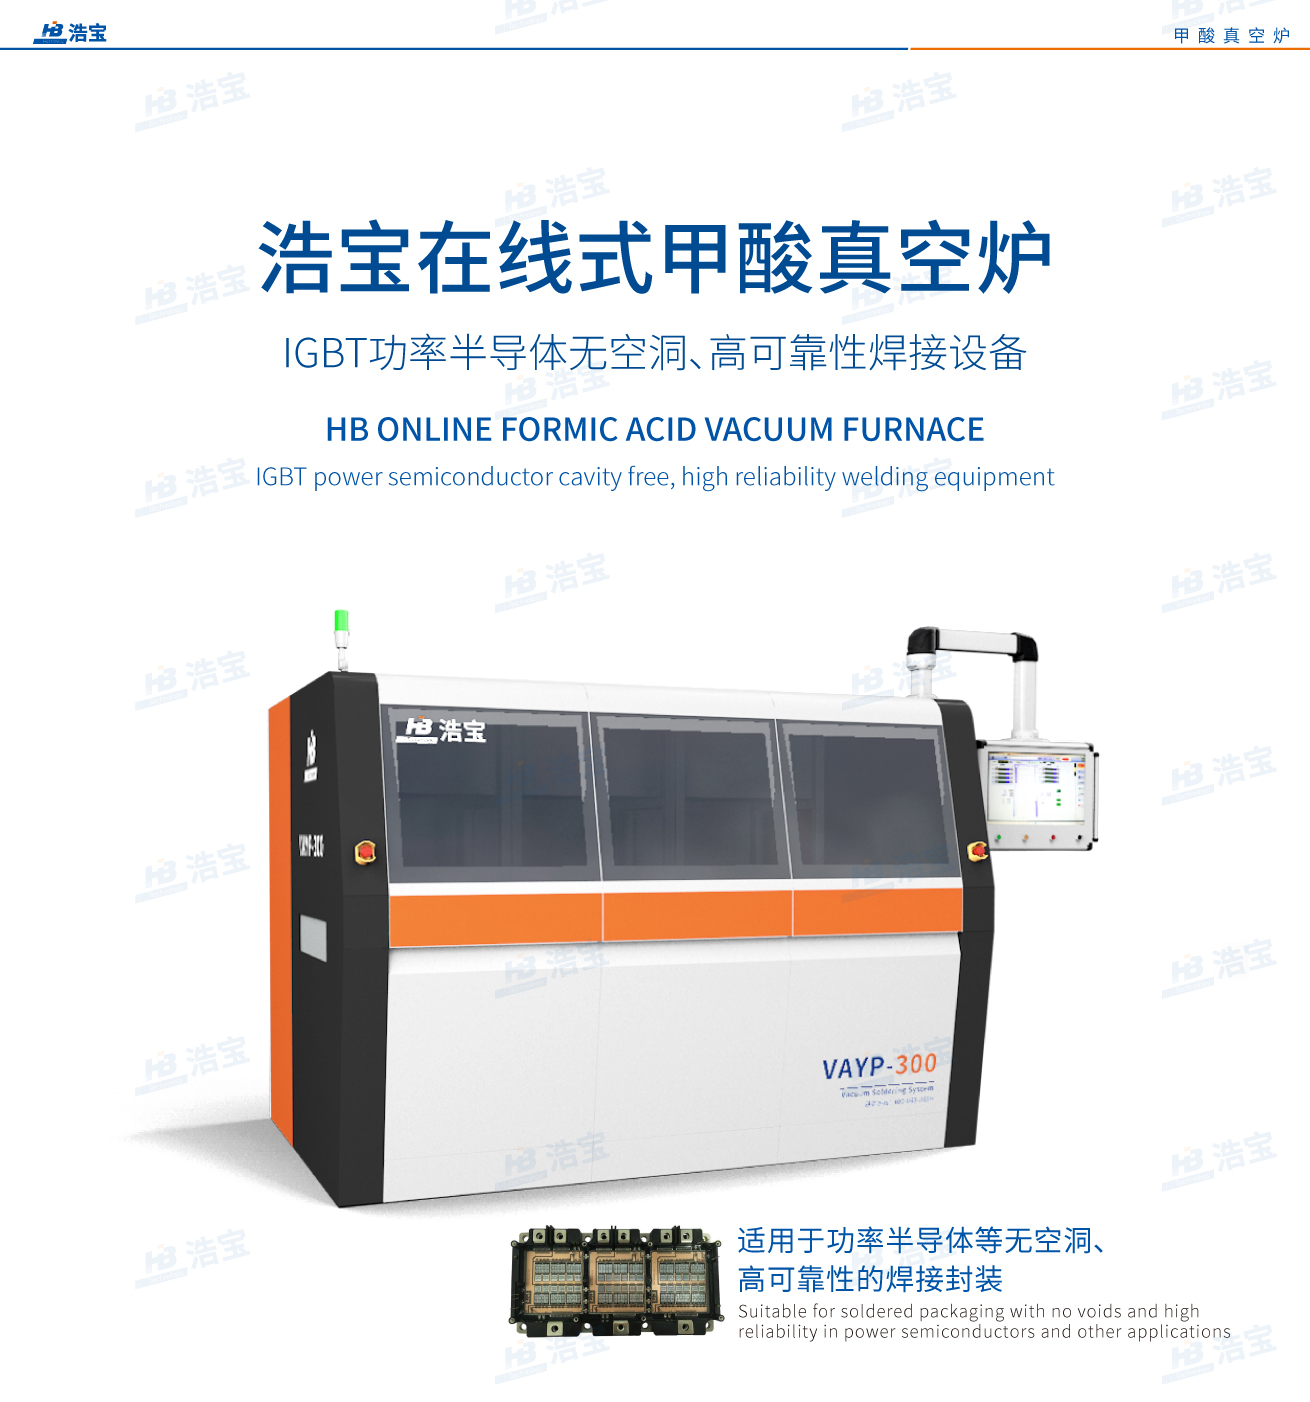 江南JN中国体育官方网站在线式甲酸真空炉，IGBT功率半导体无空洞、高可靠性焊接设备